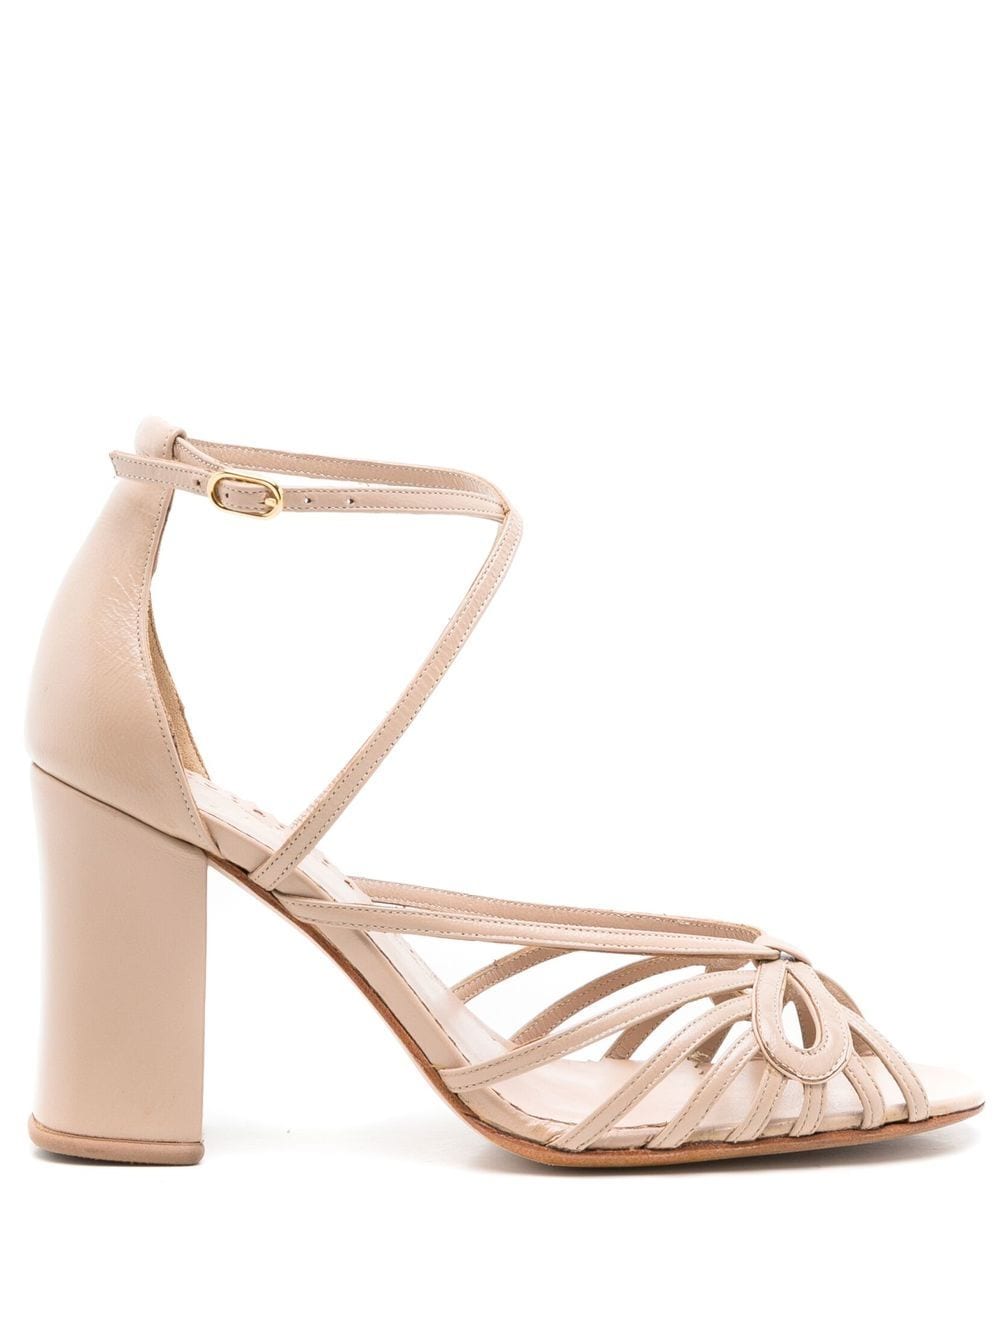 Sarah Chofakian Miuccia 75mm bow-detail sandals - Neutrals von Sarah Chofakian